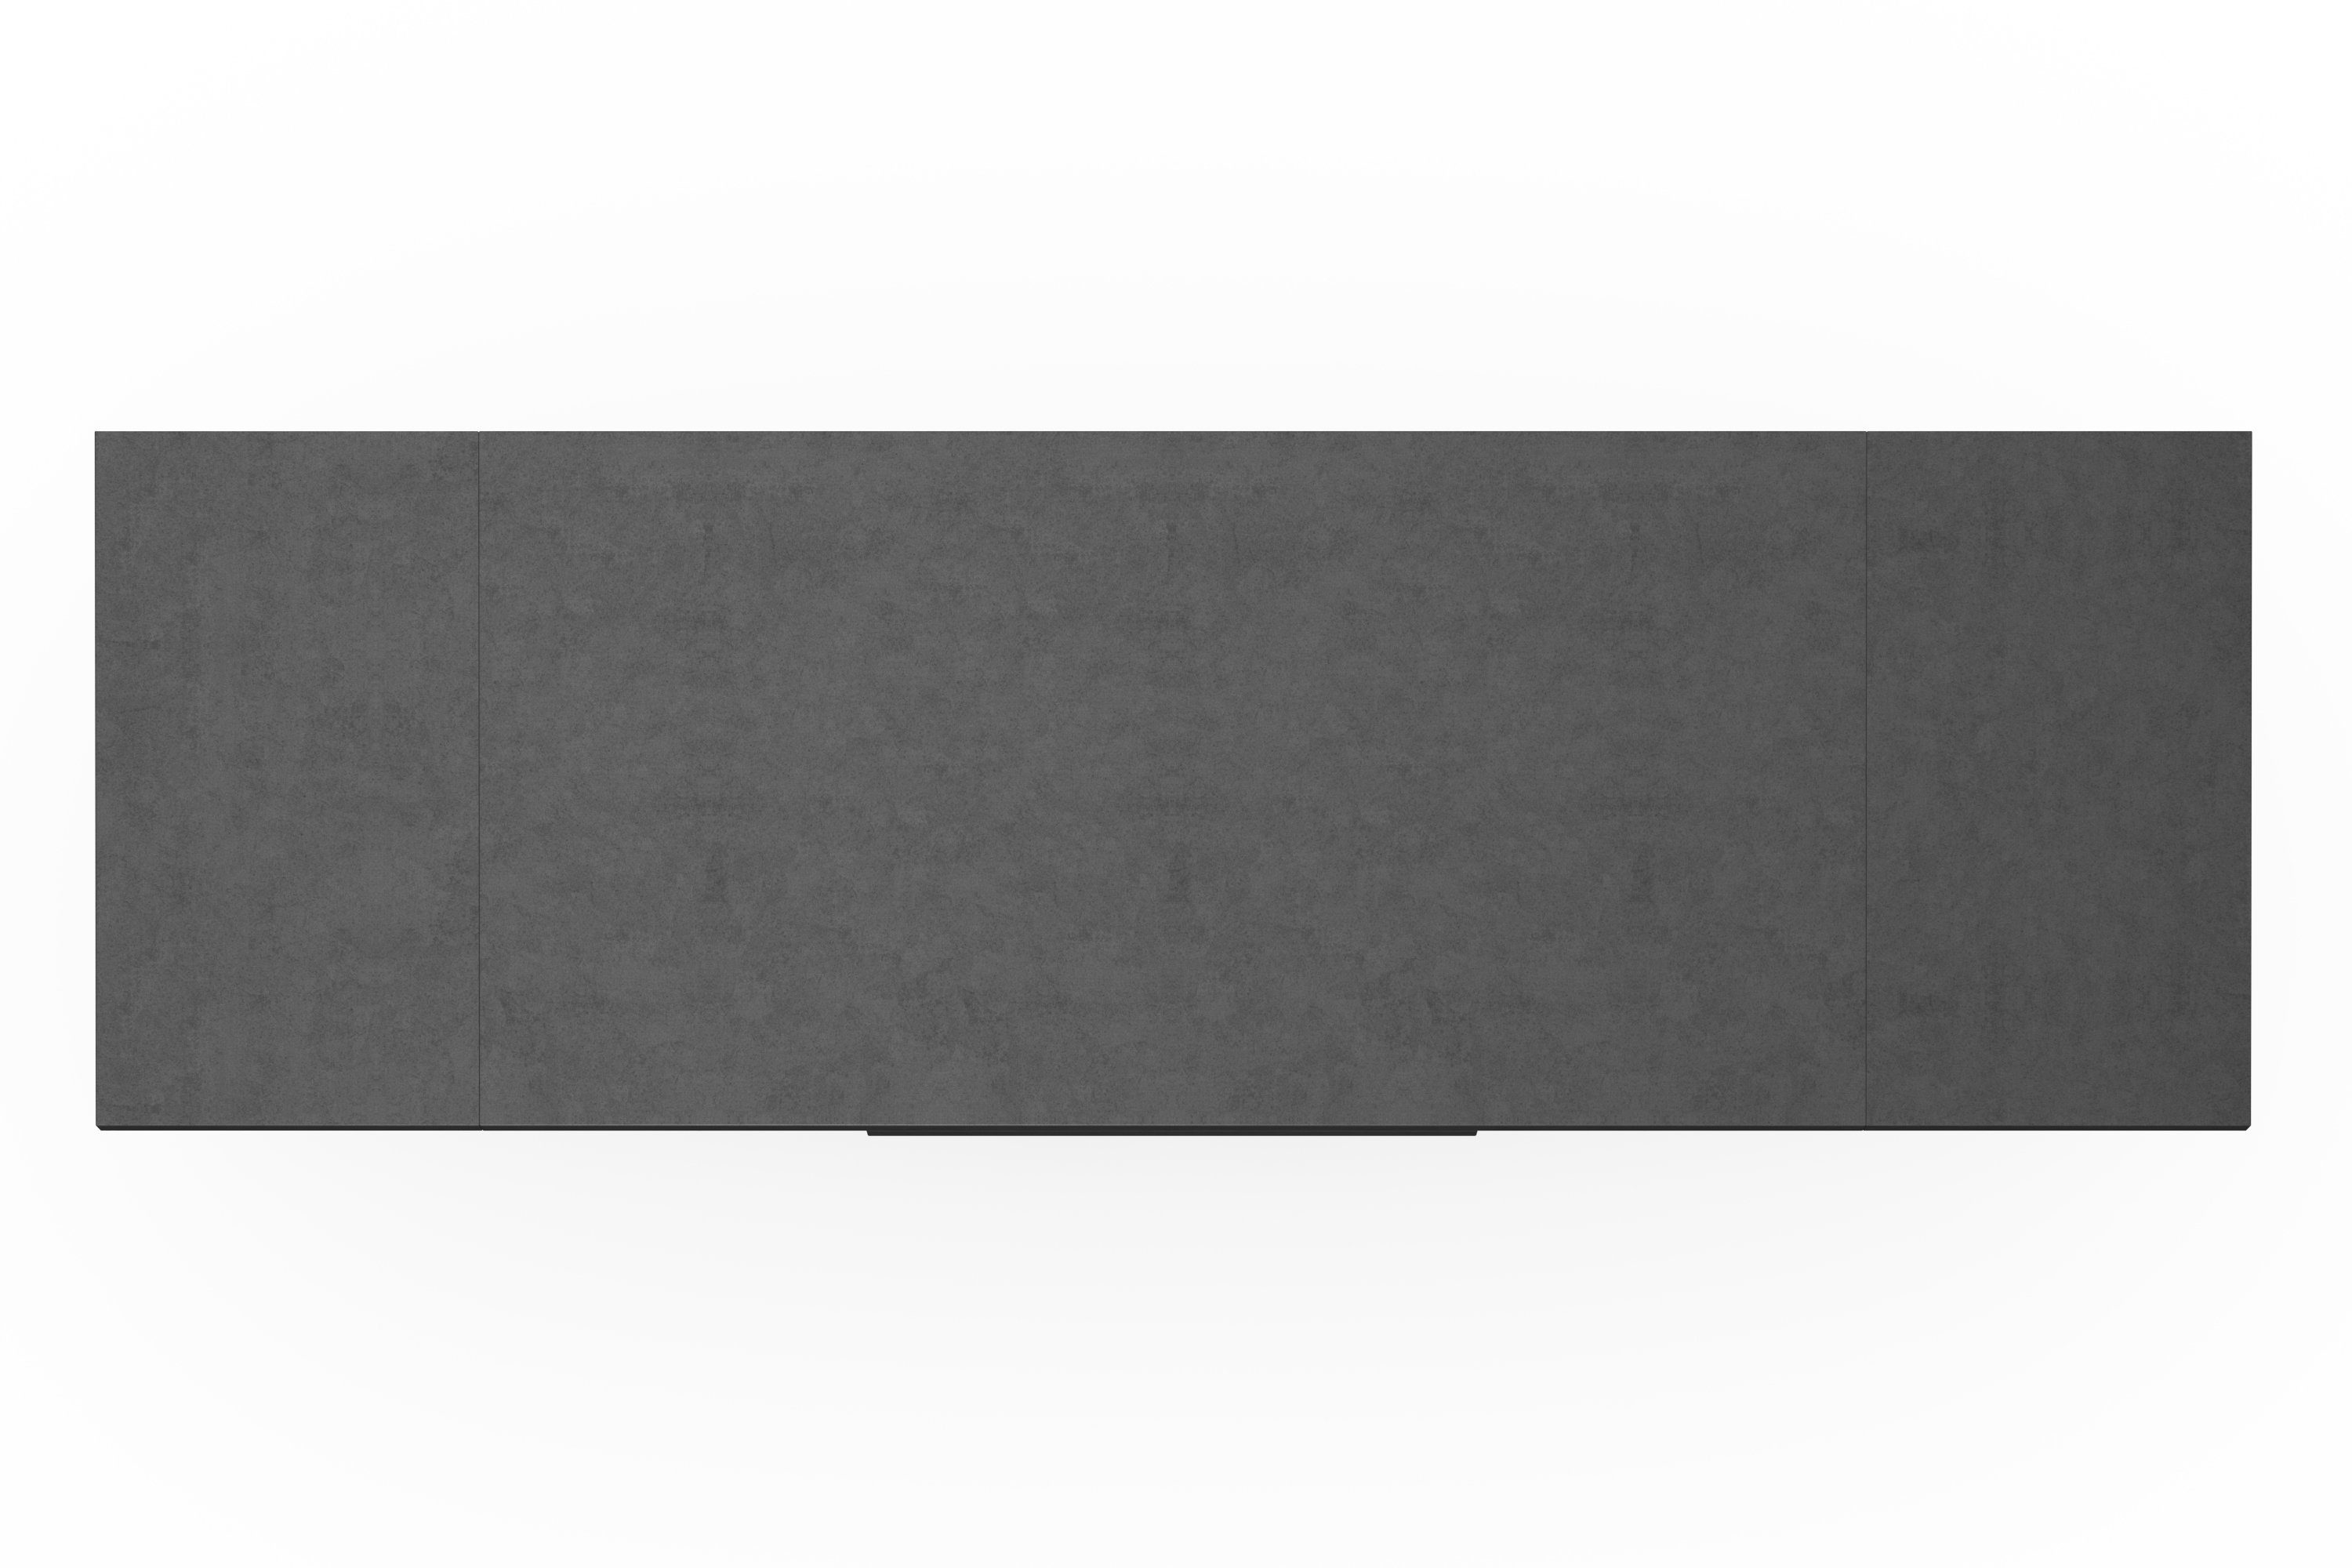 Mäusbacher 180-260 asteichefarben Breite in V-Gestell Komfort Auszug, mit und mit cm D, Esstisch asteichefarben/graphit